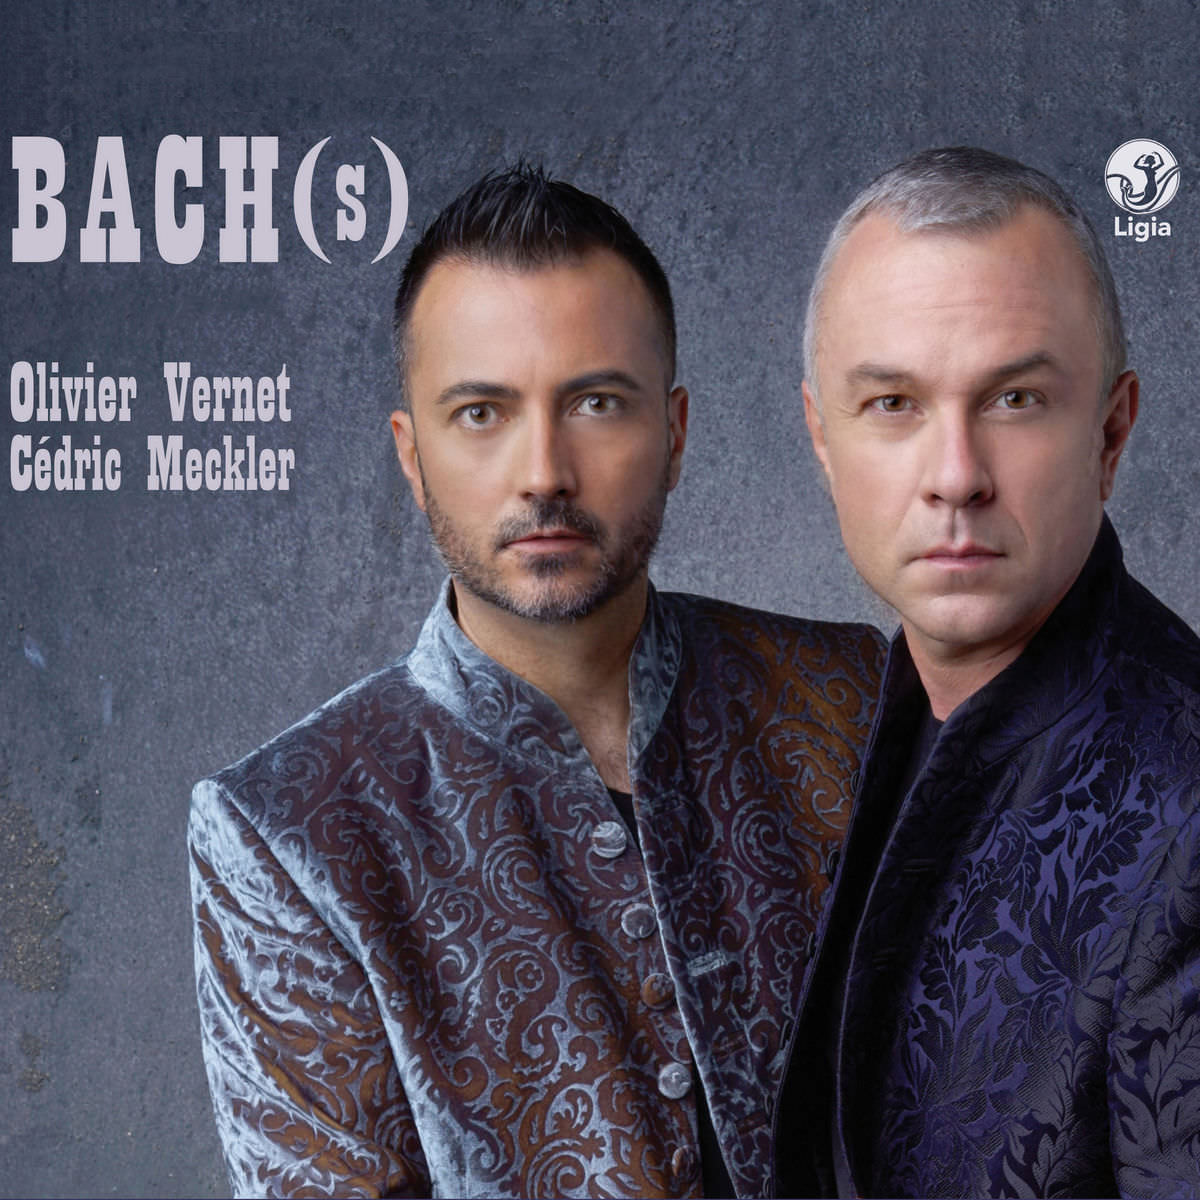 Olivier Vernet & Cedric Meckler - Bach(s): Organ Works for Four Hands (2018) [FLAC 24bit/96kHz]